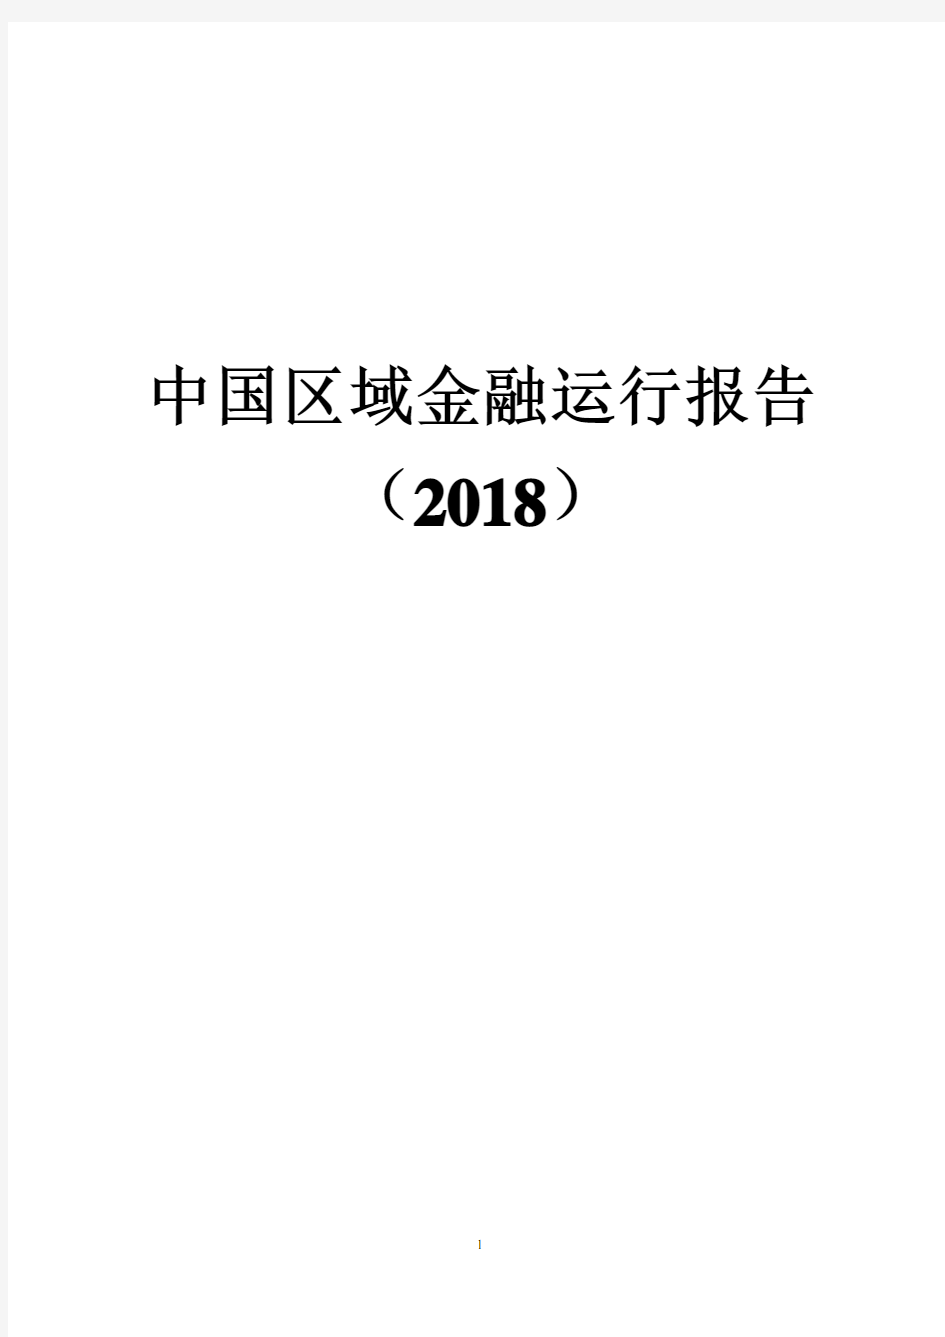 2018年中国区域金融运行报告